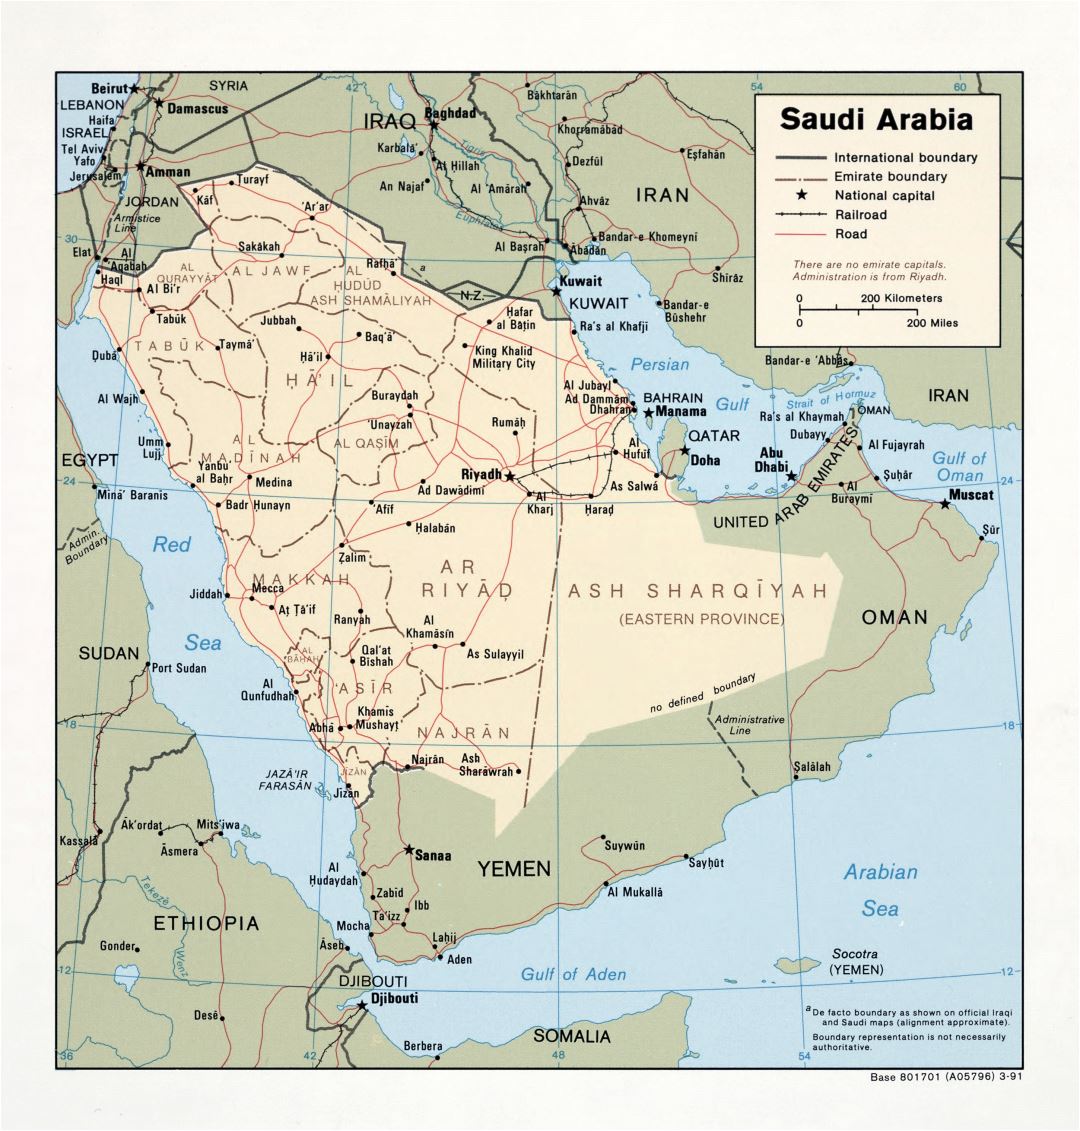 Grande detallado mapa político y administrativo de Arabia Saudita con carreteras, ferrocarriles y principales ciudades - 1991